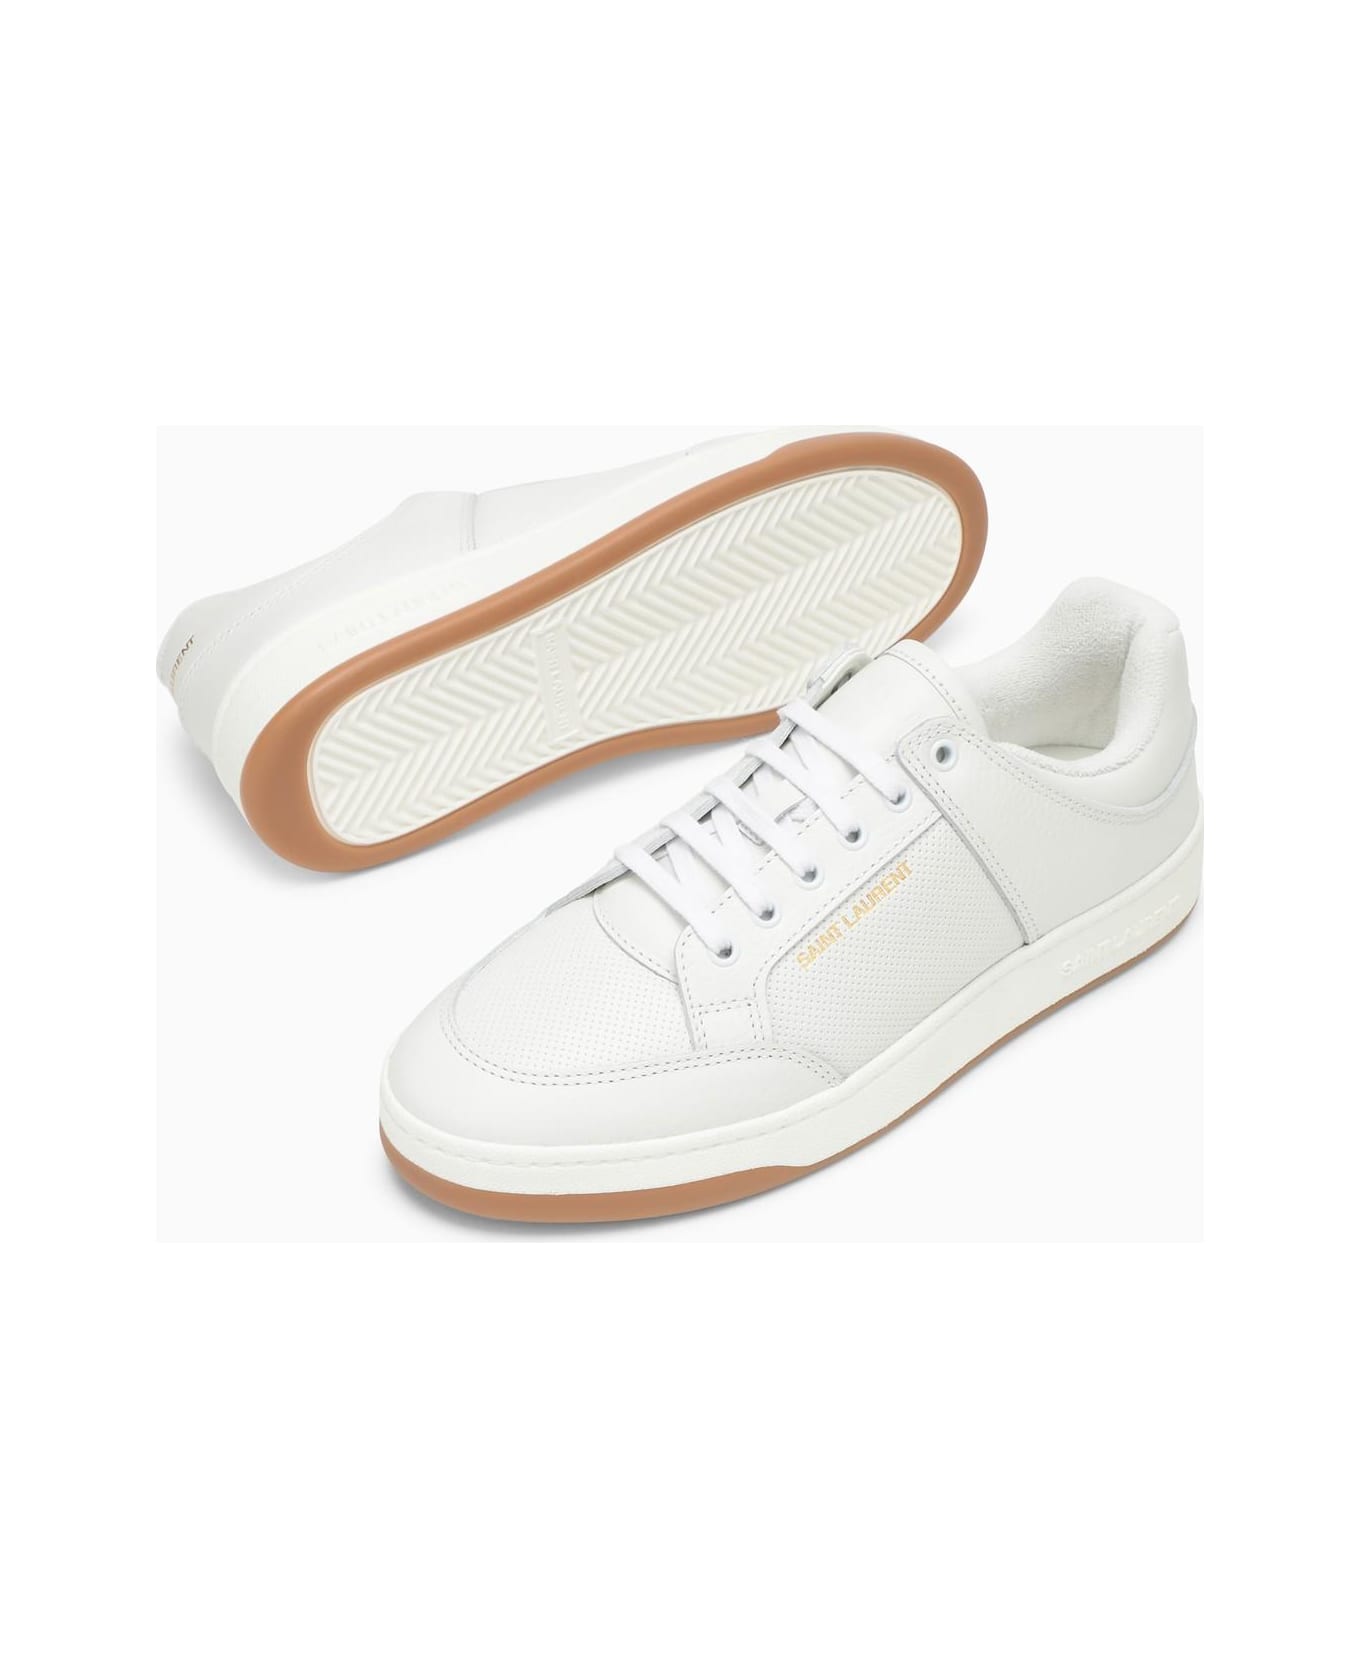 Saint Laurent Sl/61 Sneakers - White スニーカー